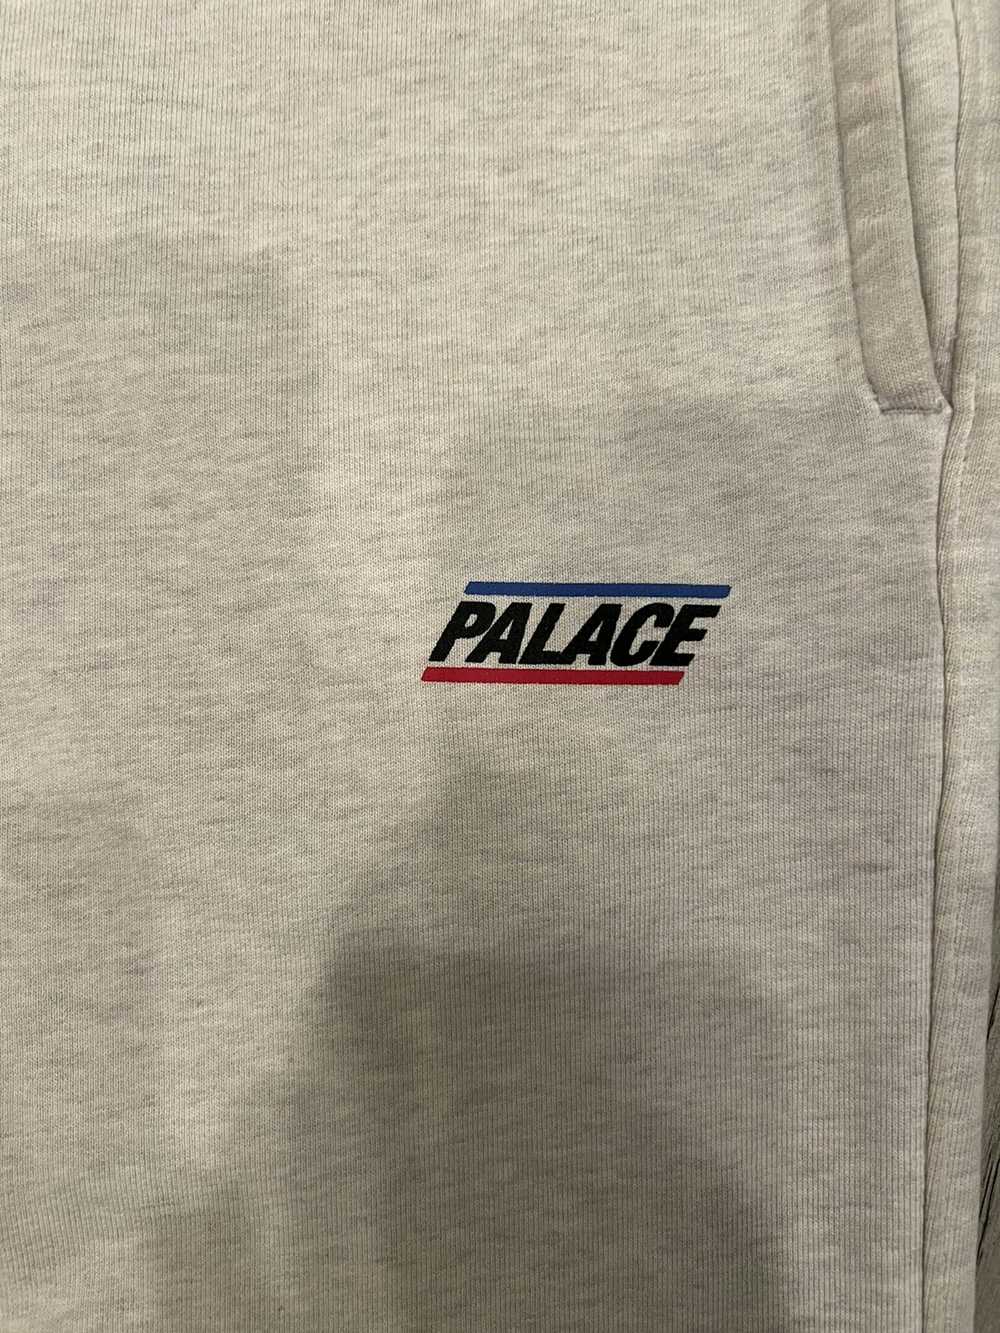 Palace Palace Sweatpants - image 2